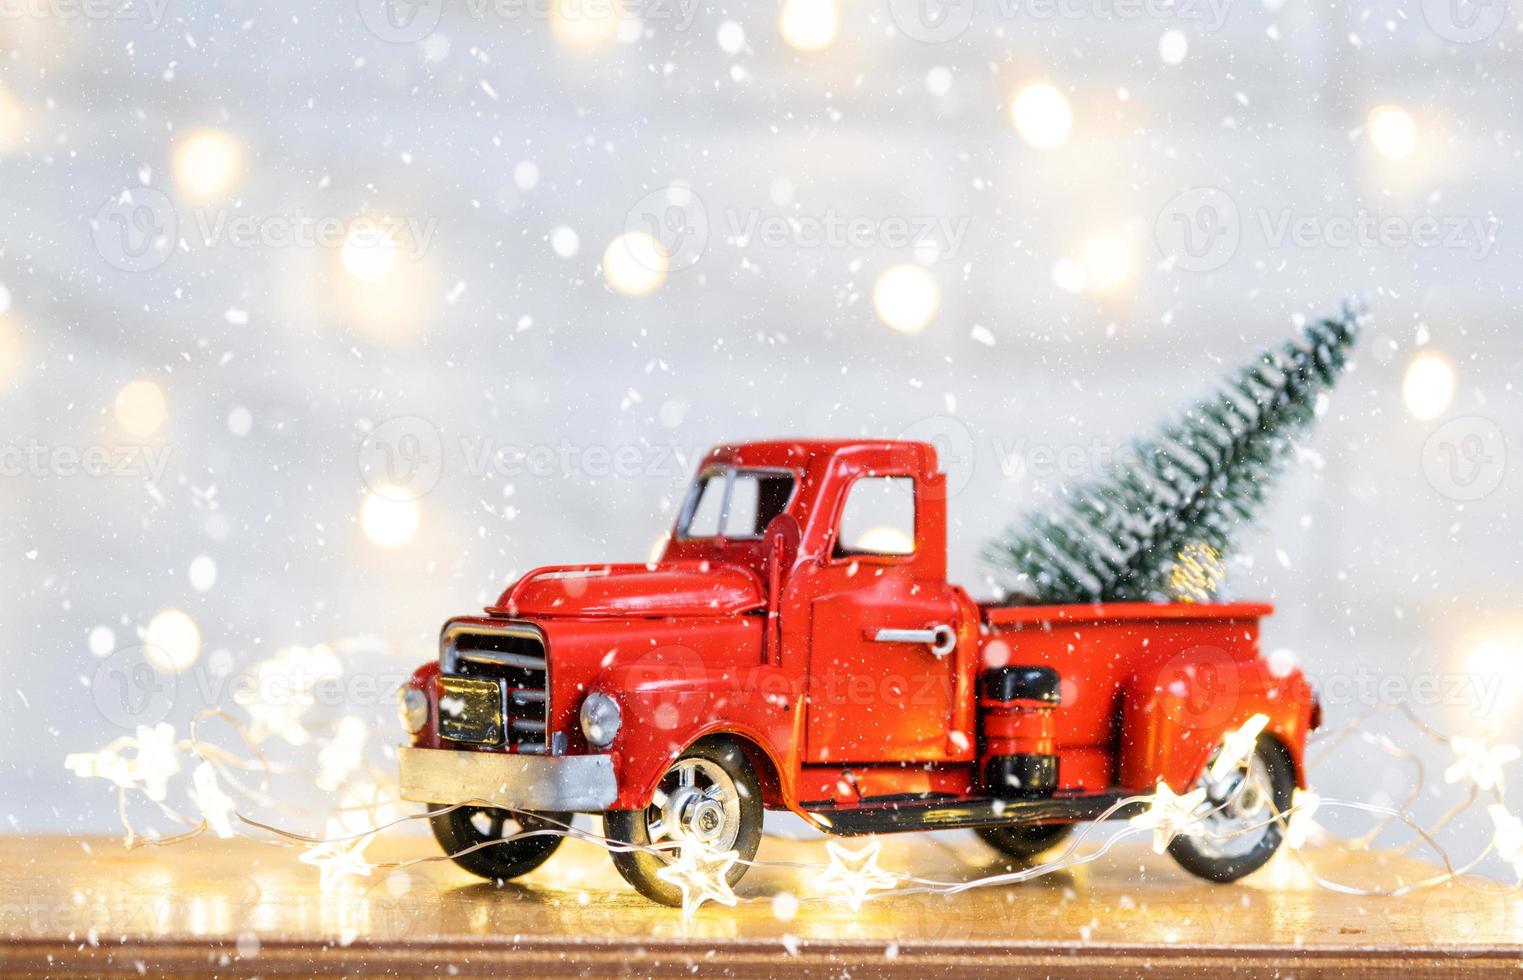 decoración navideña camioneta roja retro en la nieve con luces de hadas en el árbol de navidad bokeh. tarjeta de felicitación de año nuevo. hogar acogedor foto